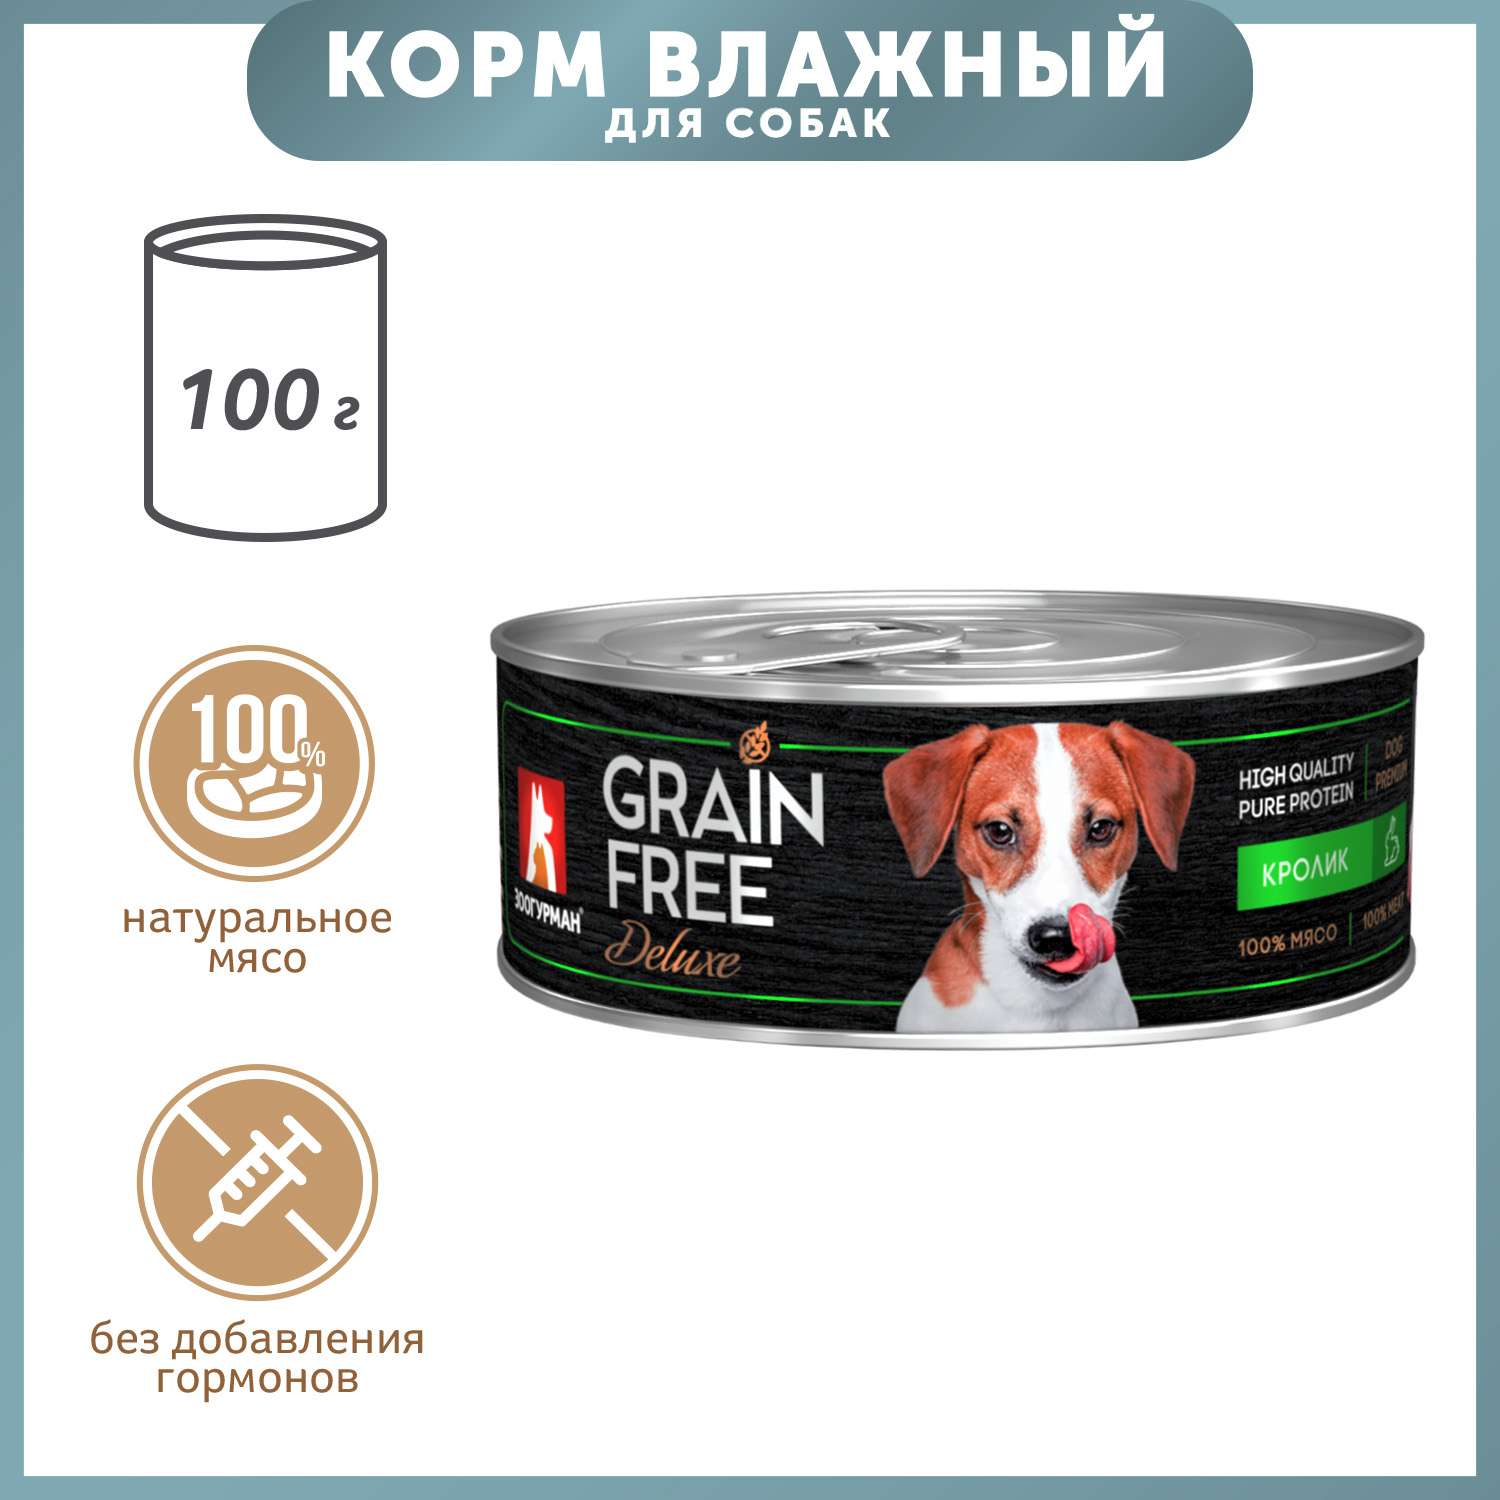 Корм для собак Зоогурман 100г Grain free кролик консервированный - фото 1